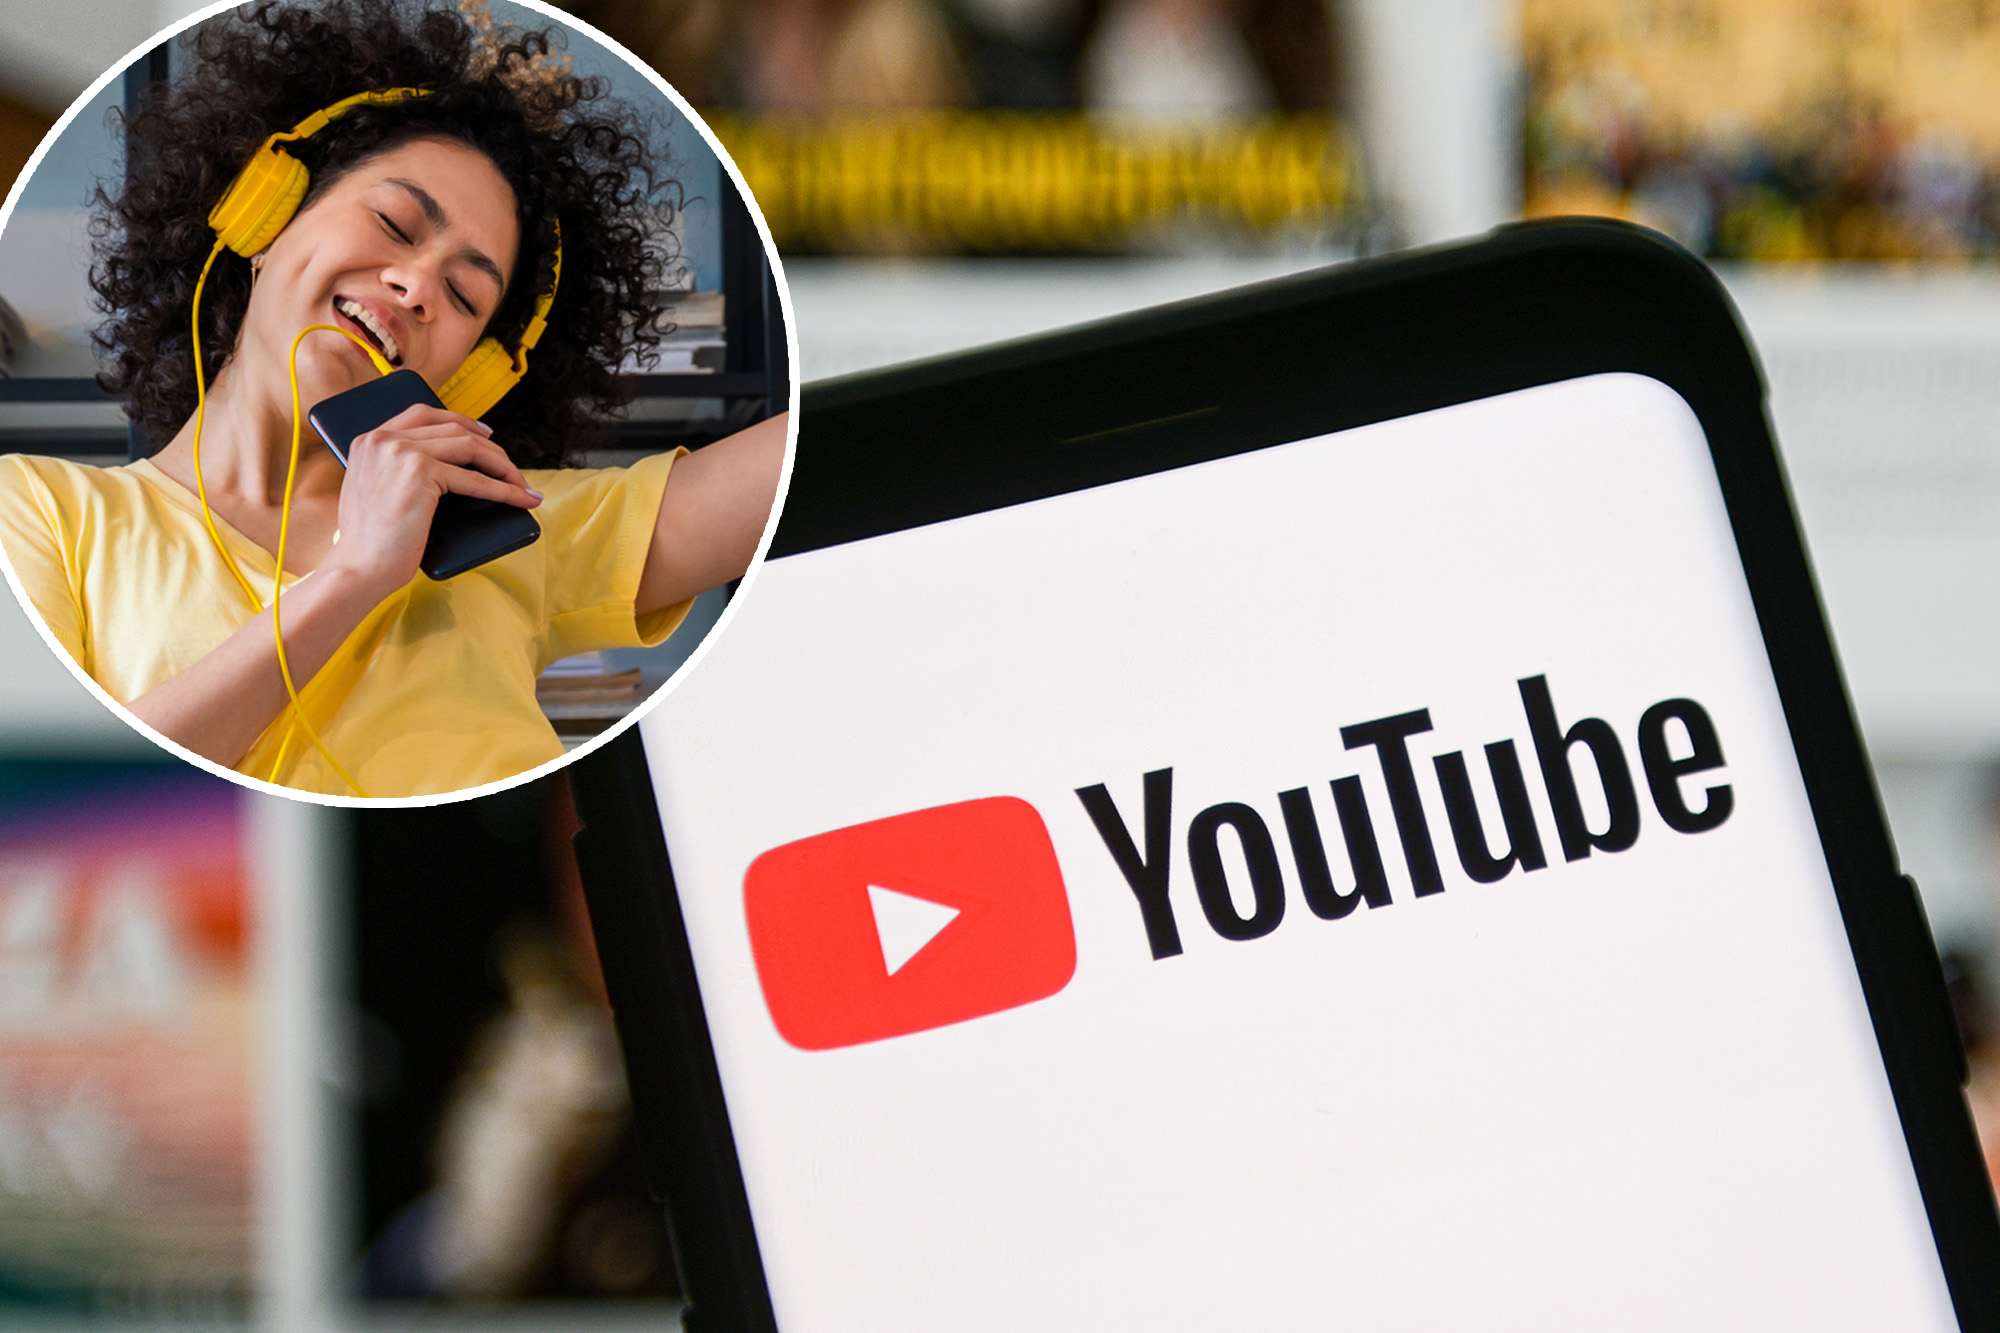 YouTube thử nghiệm tính năng tìm kiếm bài hát bằng cách “ngân nga giai điệu”